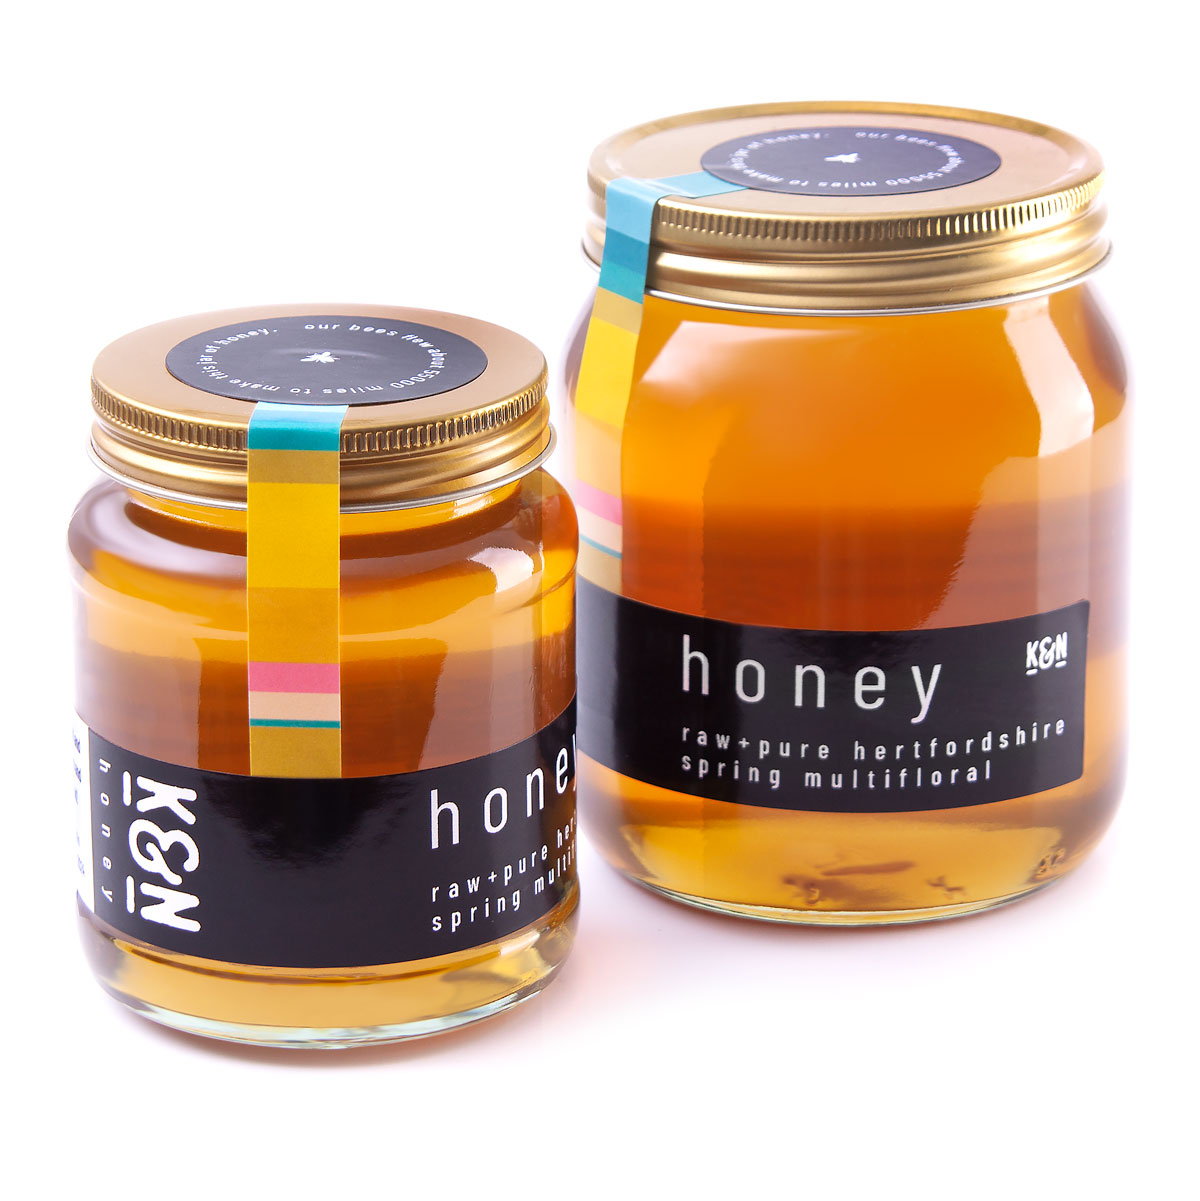 hertfordshire honey